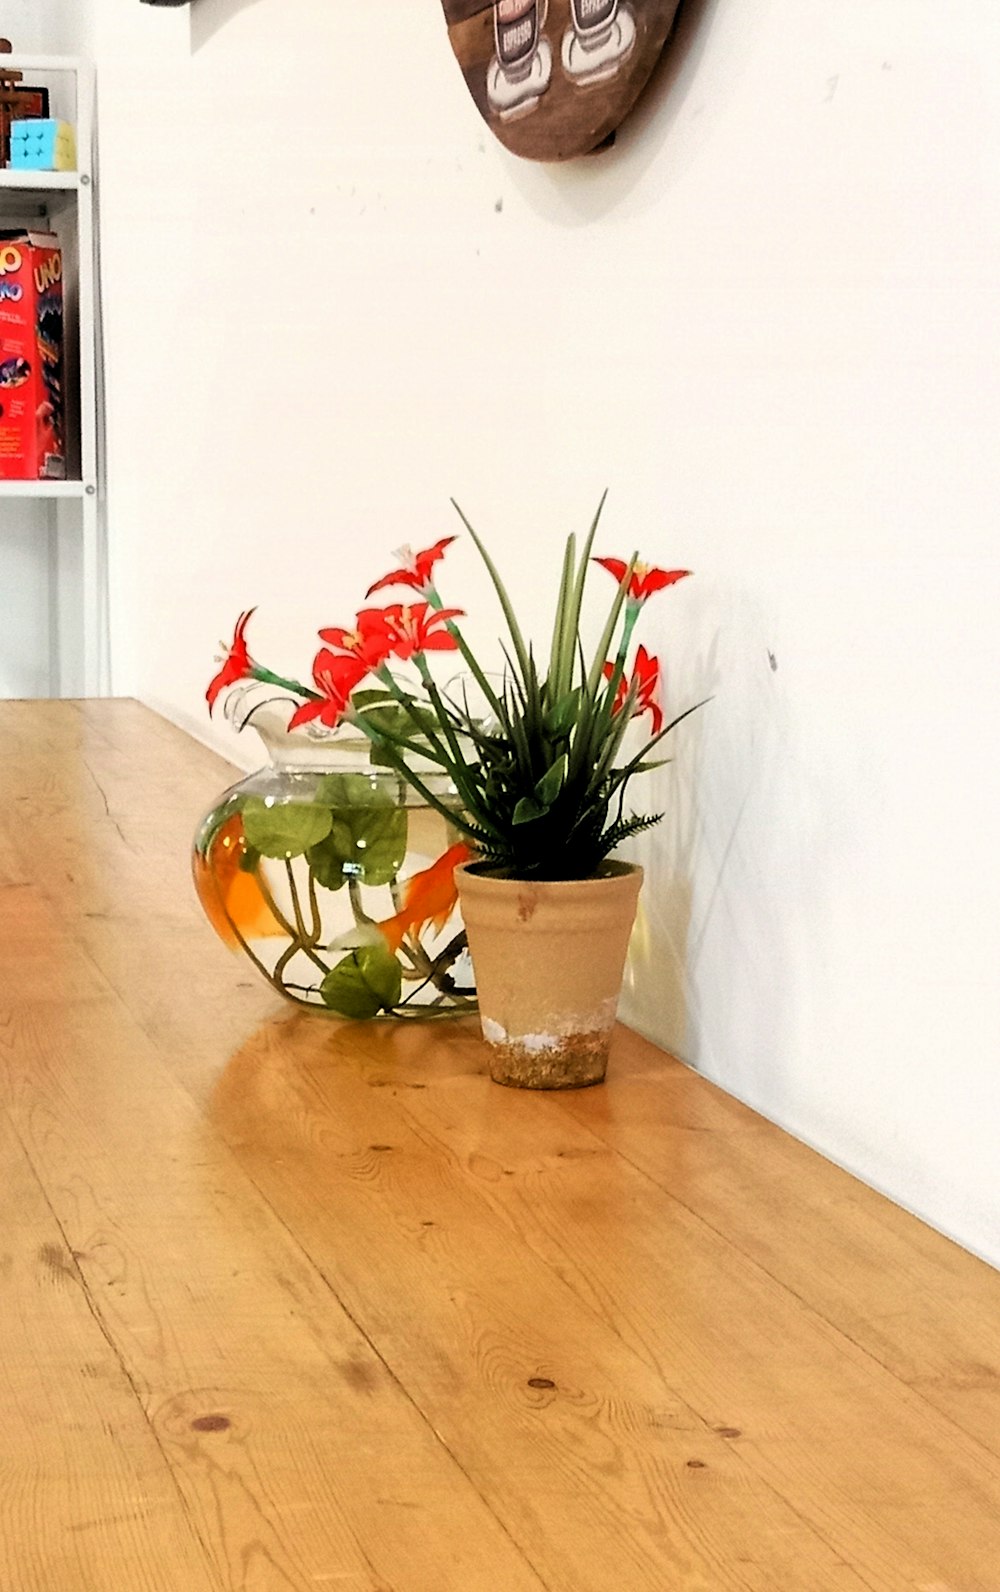 鉢植えの植物を載せた木製のテーブル